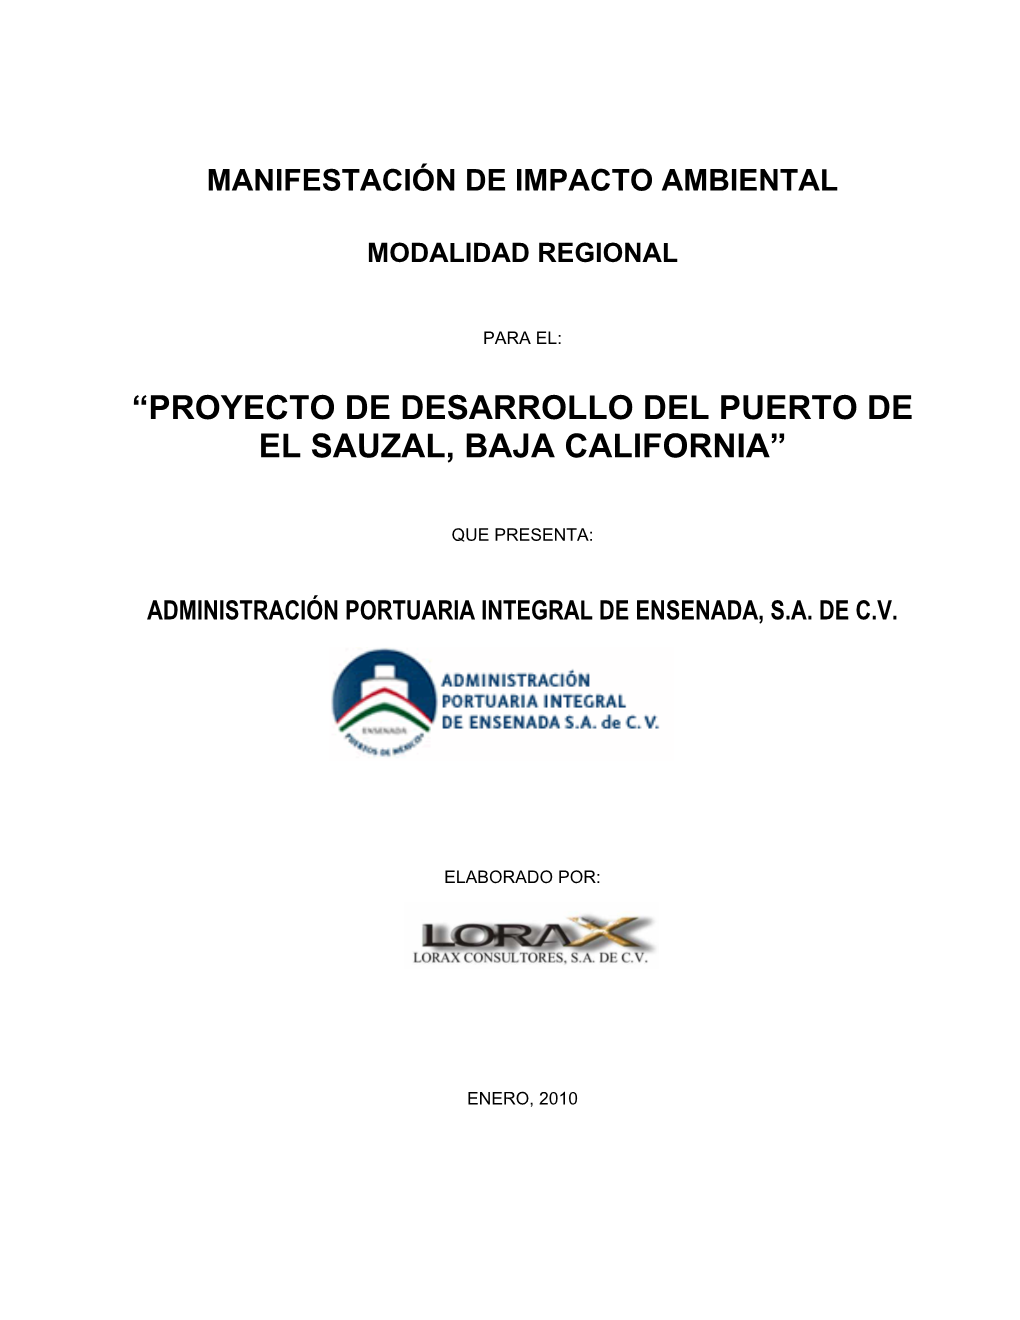 Proyecto De Desarrollo Del Puerto De El Sauzal, Baja California”